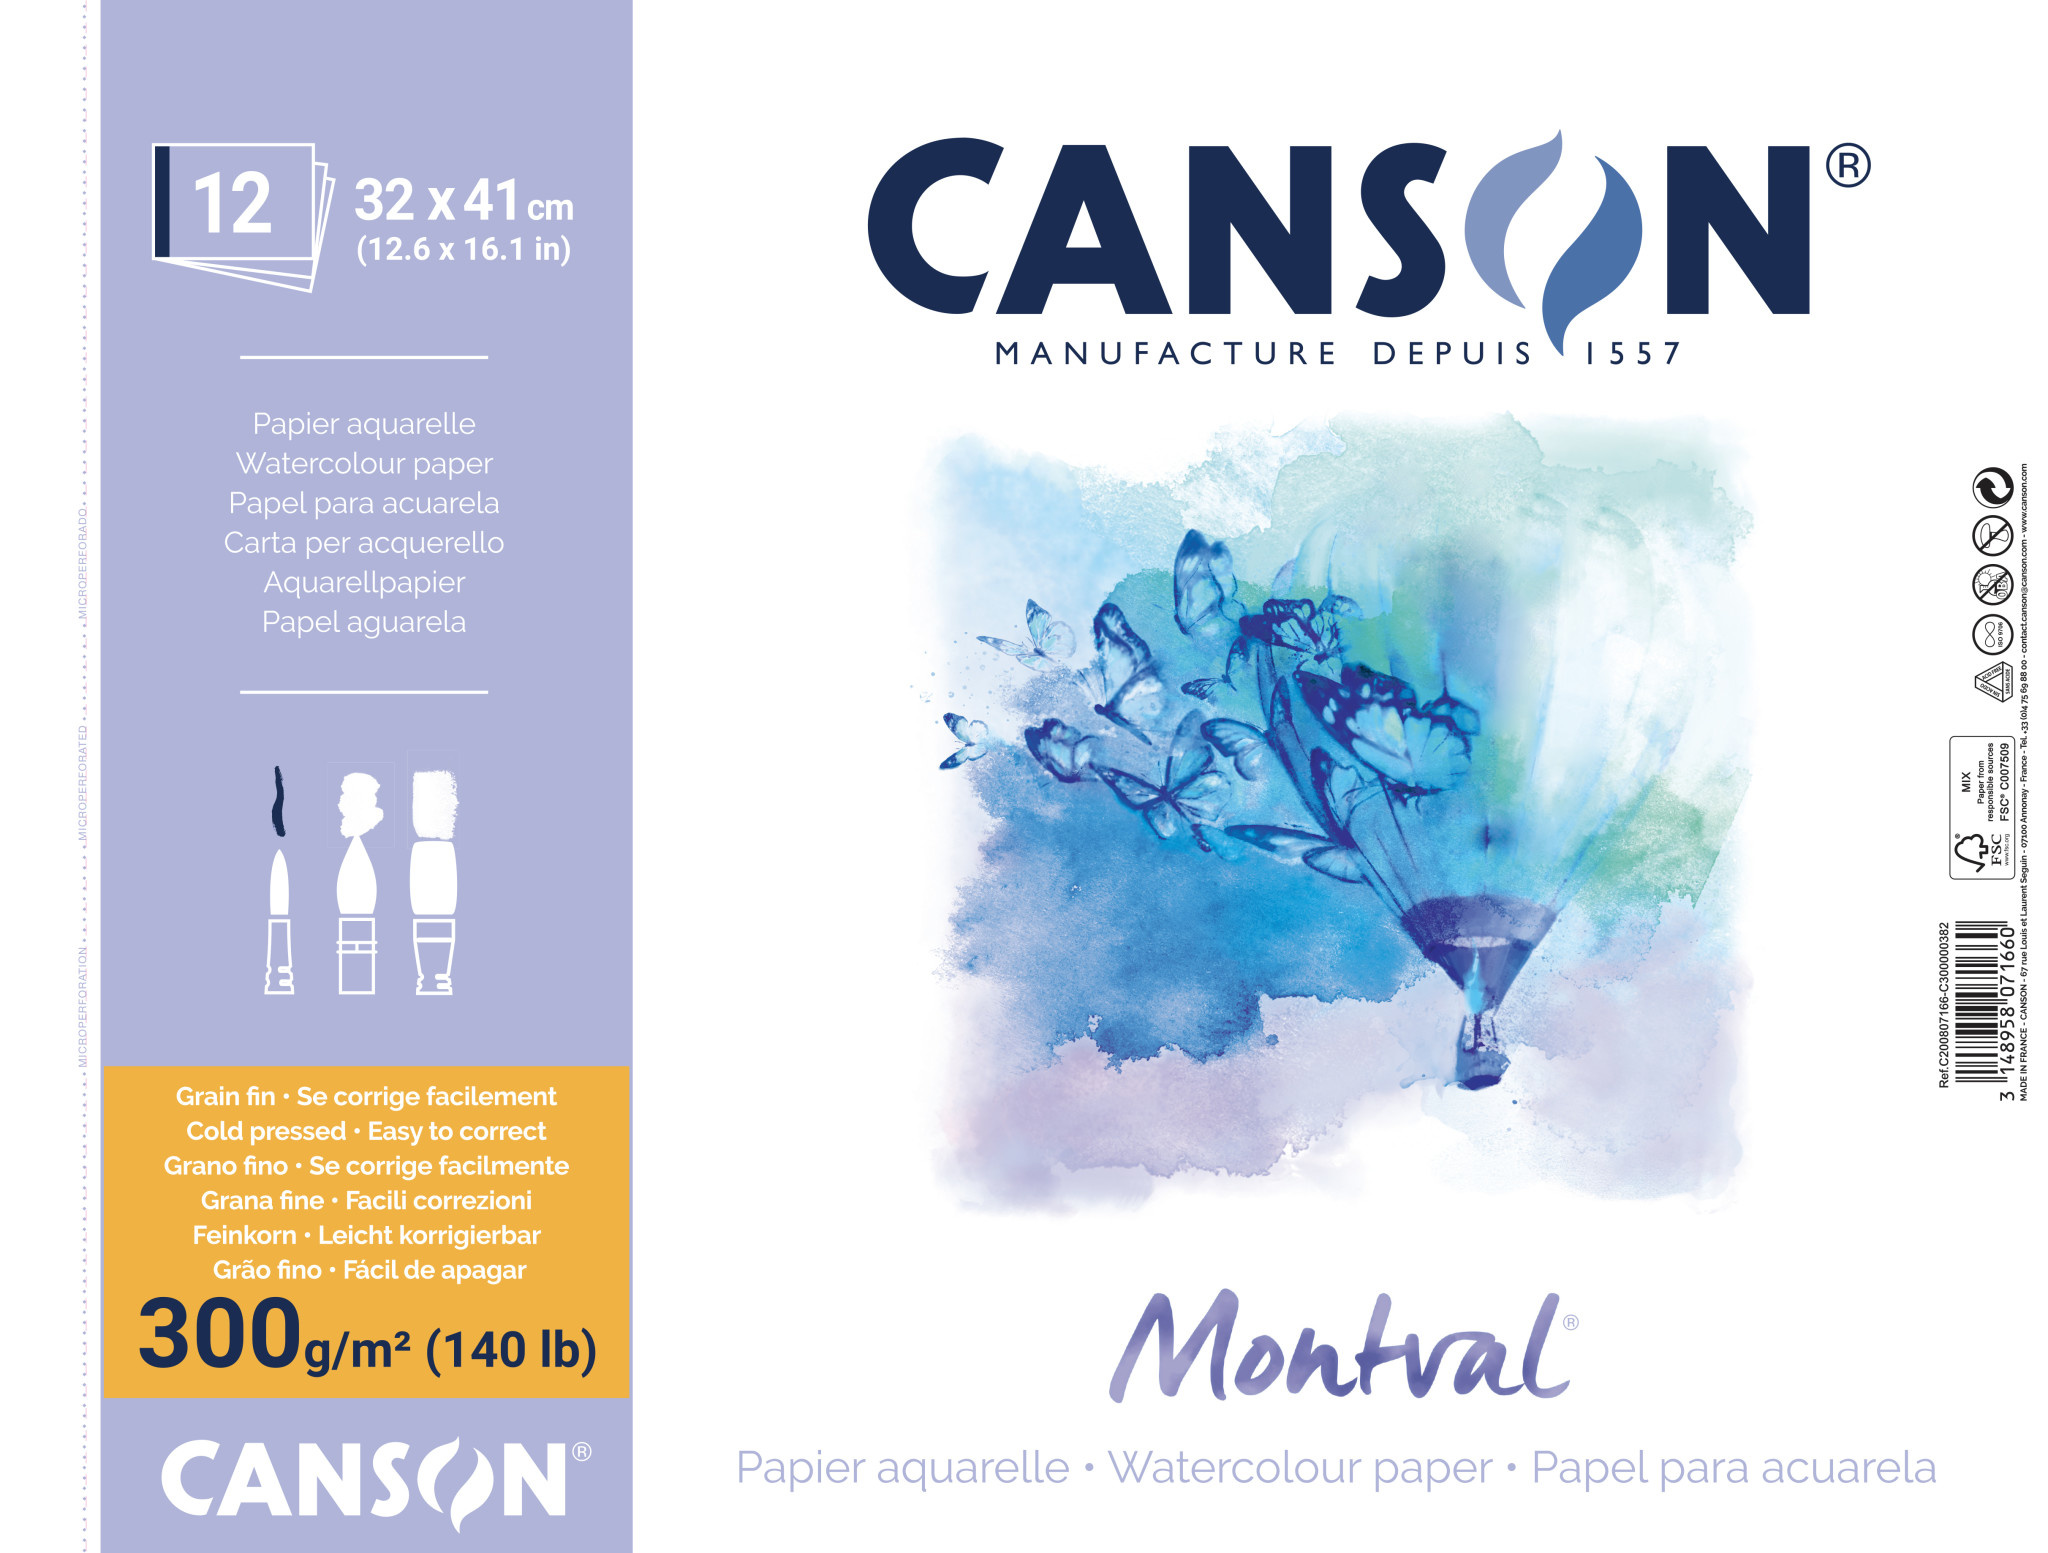 Papier de Création couleurs CANSON en pochette- Grain Fin 150g/m²